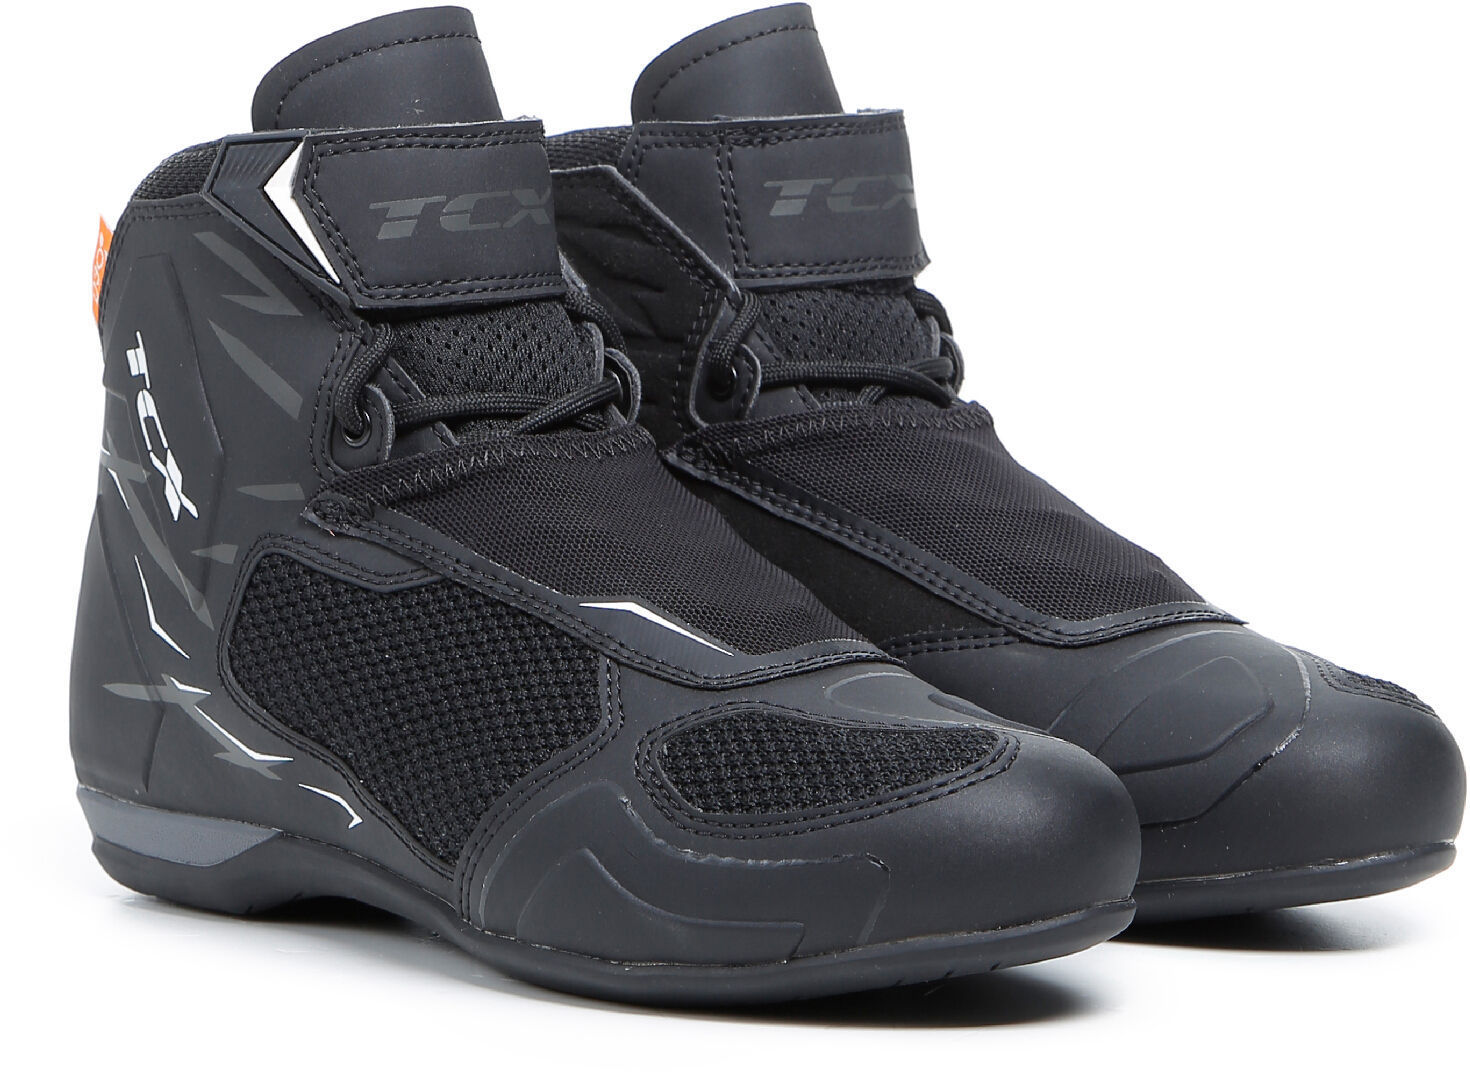 TCX RO4D Air Zapatos de motocicleta para damas - Negro Blanco (41)